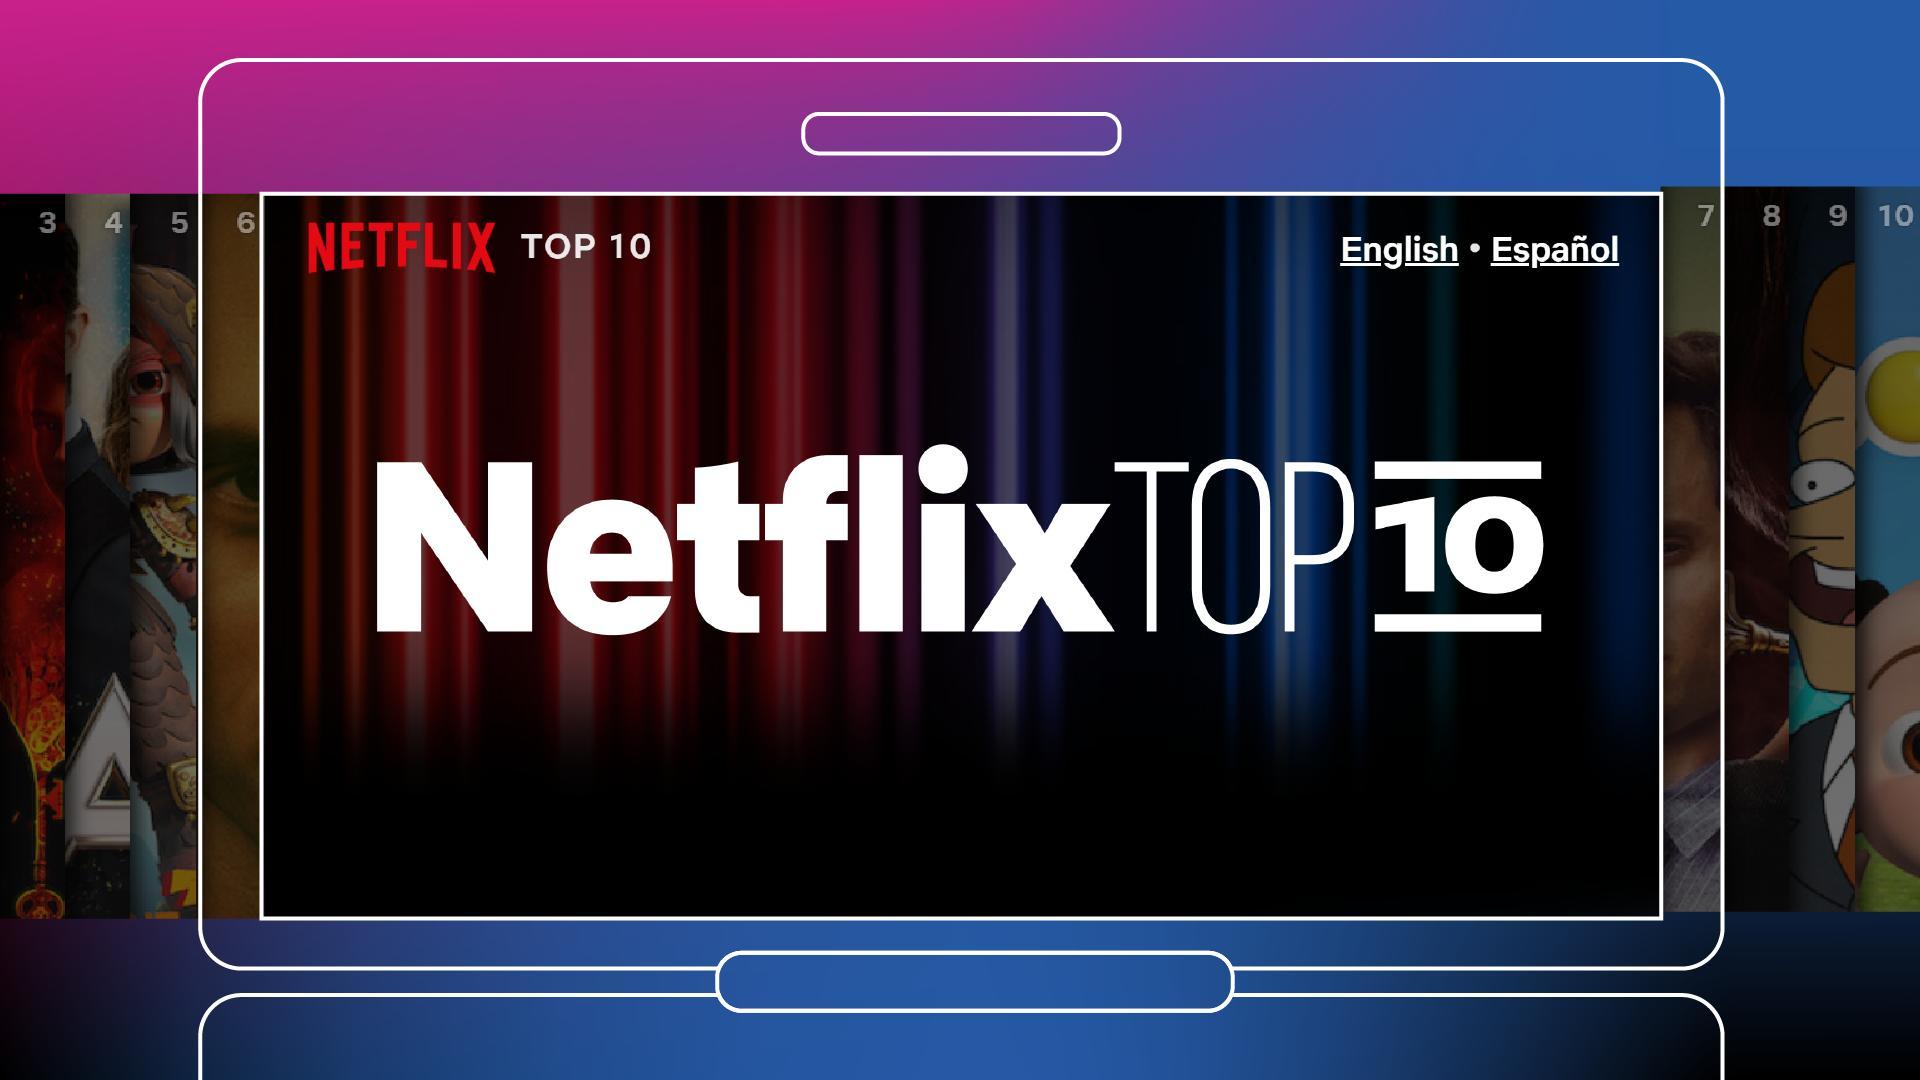 Top 10 Series Y PelIculas Netflix M S Vistas Esta Semana 2022 1